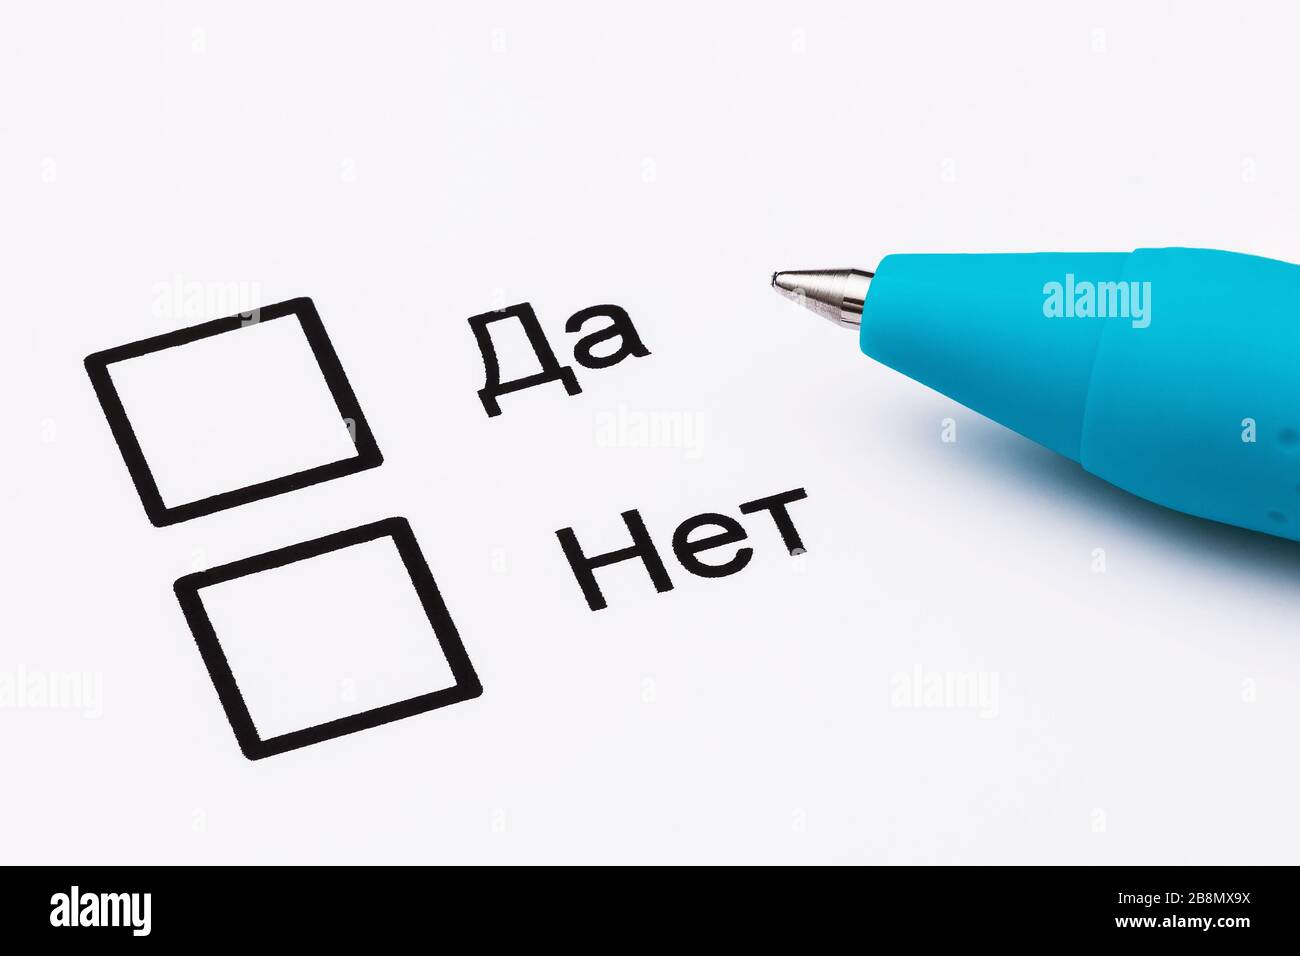 Die Aufschrift auf Russisch: Ja und Nein Stift und Blatt Papier  Nahaufnahme. Abstimmungskonzept Stockfotografie - Alamy